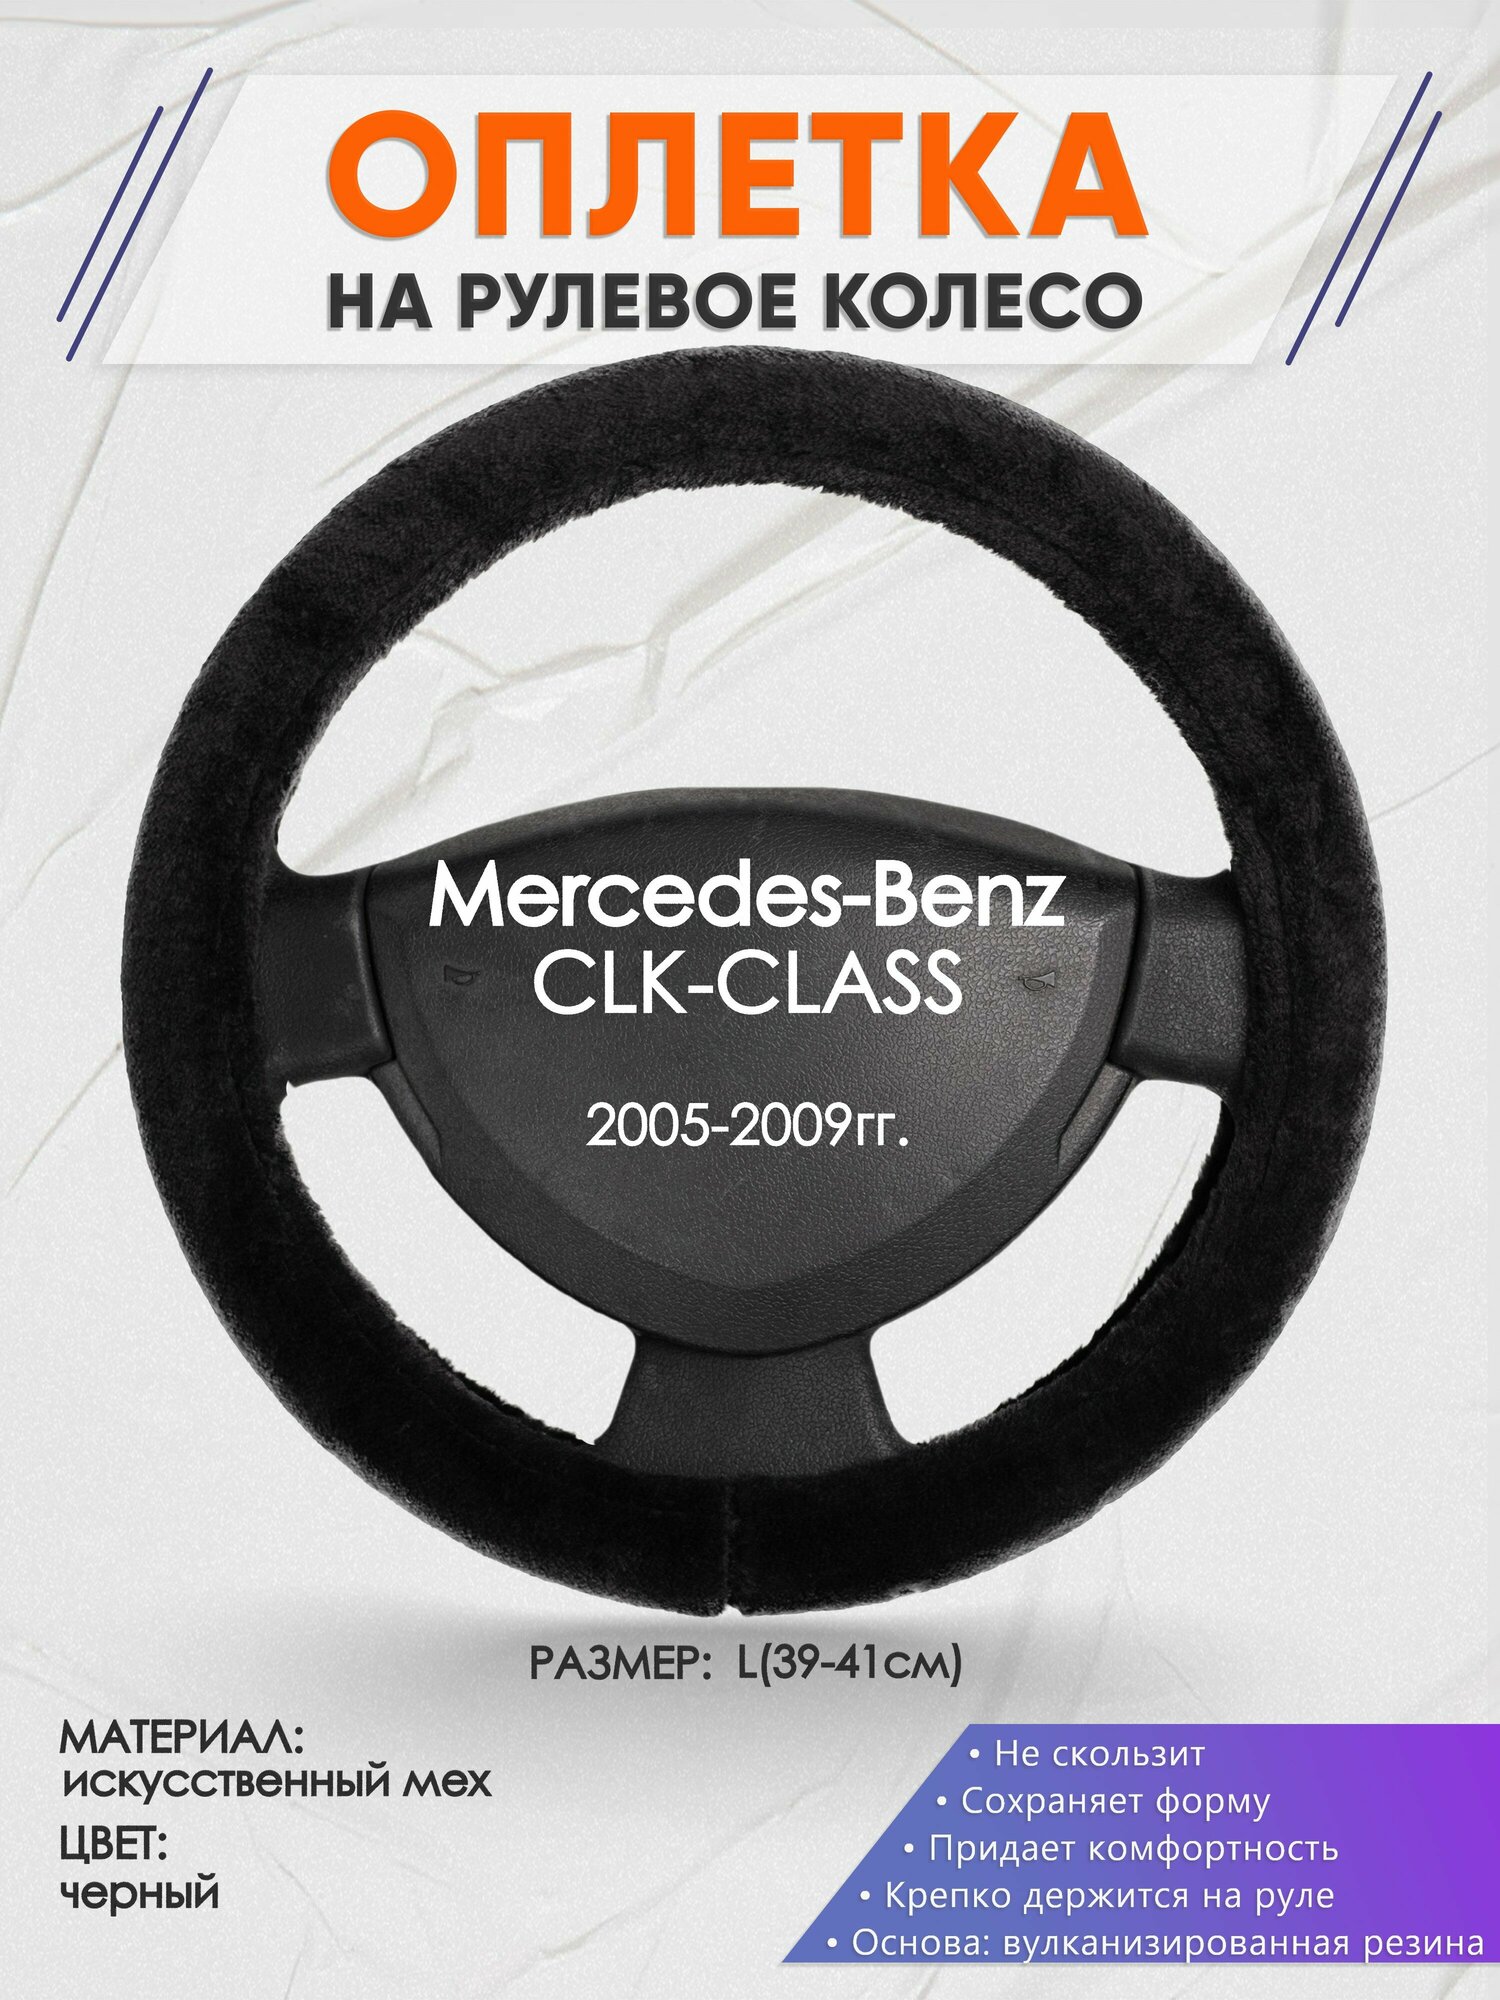 Оплетка на руль для Mercedes-Benz CLK-CLASS(Мерседес Бенц СЛК класс) 2005-2009, L(39-41см), Искусственный мех 45